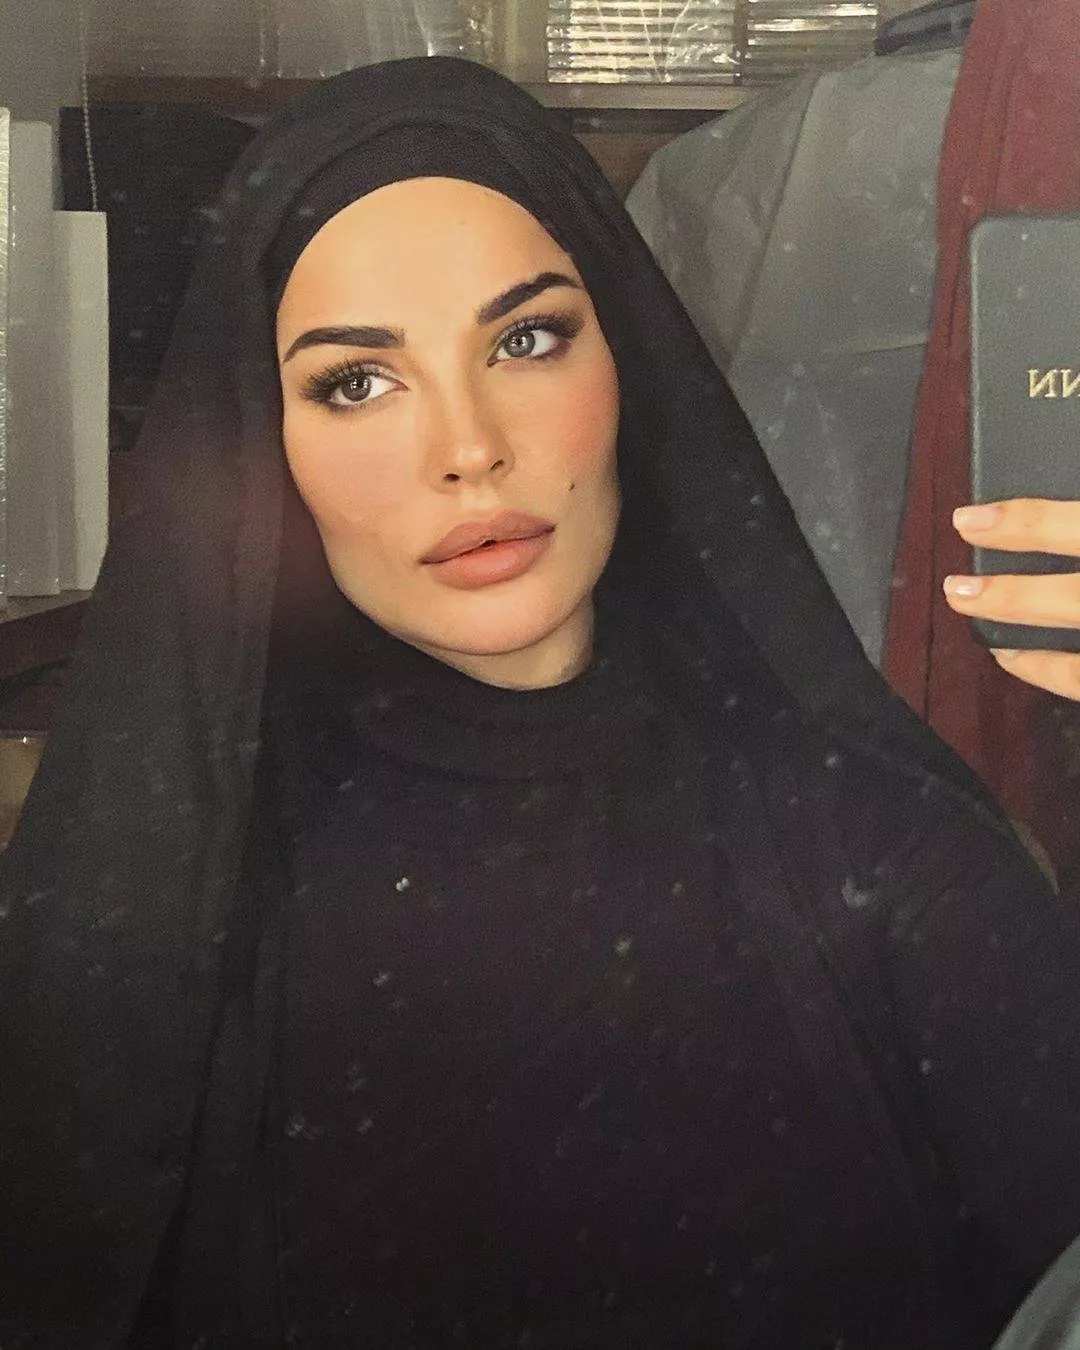 نجمات غير محجبات استقبلن رمضان 2020 بإطلالات استثنائية بالحجاب